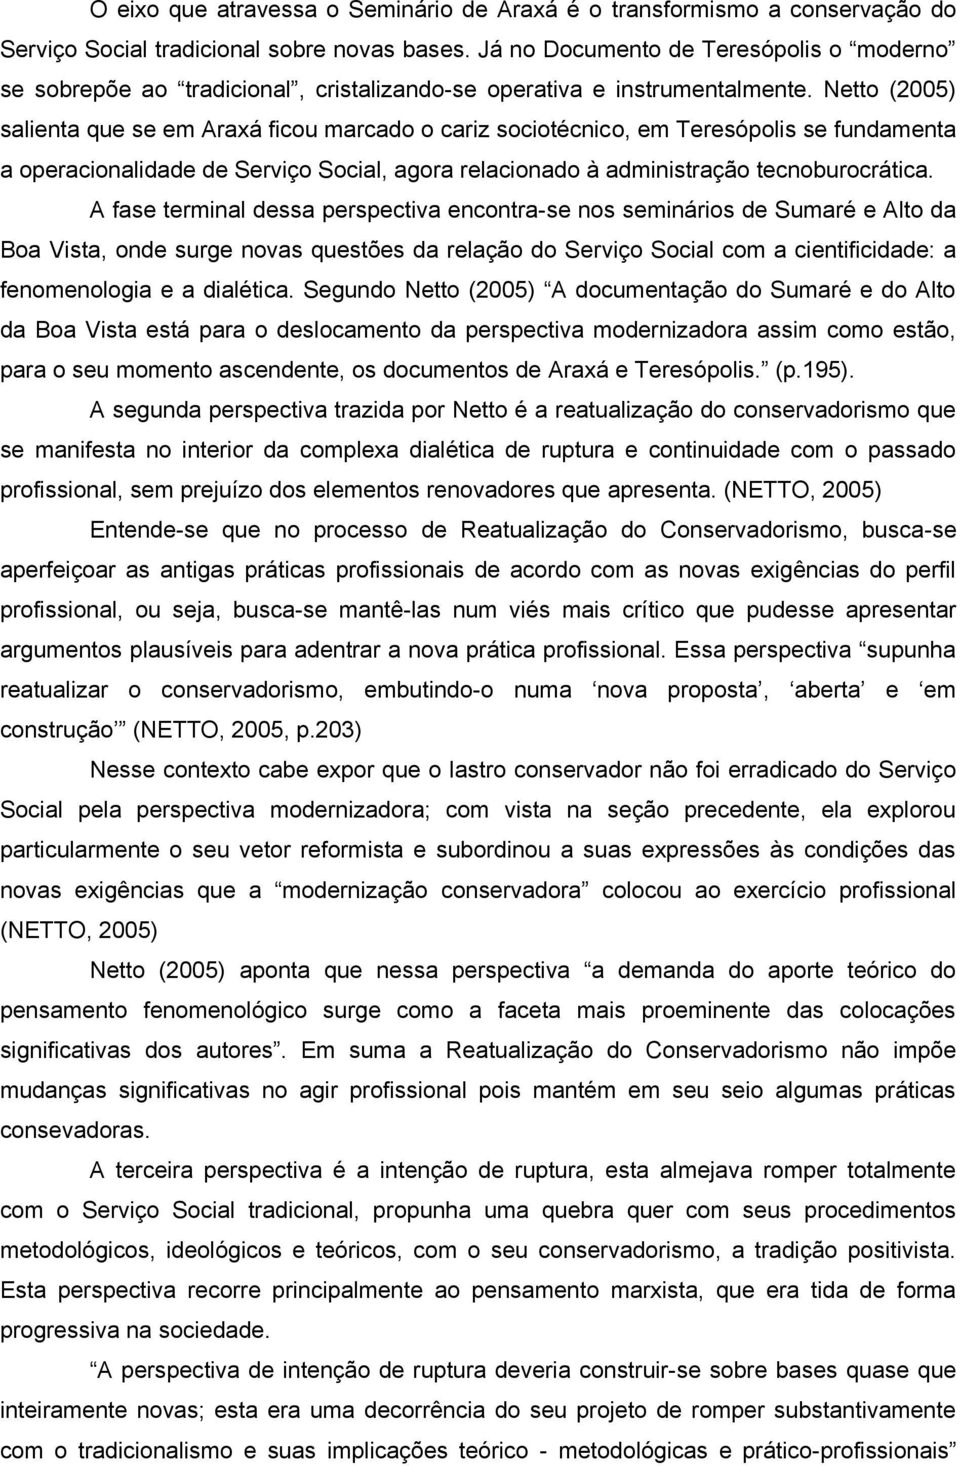 Netto (2005) salienta que se em Araxá ficou marcado o cariz sociotécnico, em Teresópolis se fundamenta a operacionalidade de Serviço Social, agora relacionado à administração tecnoburocrática.